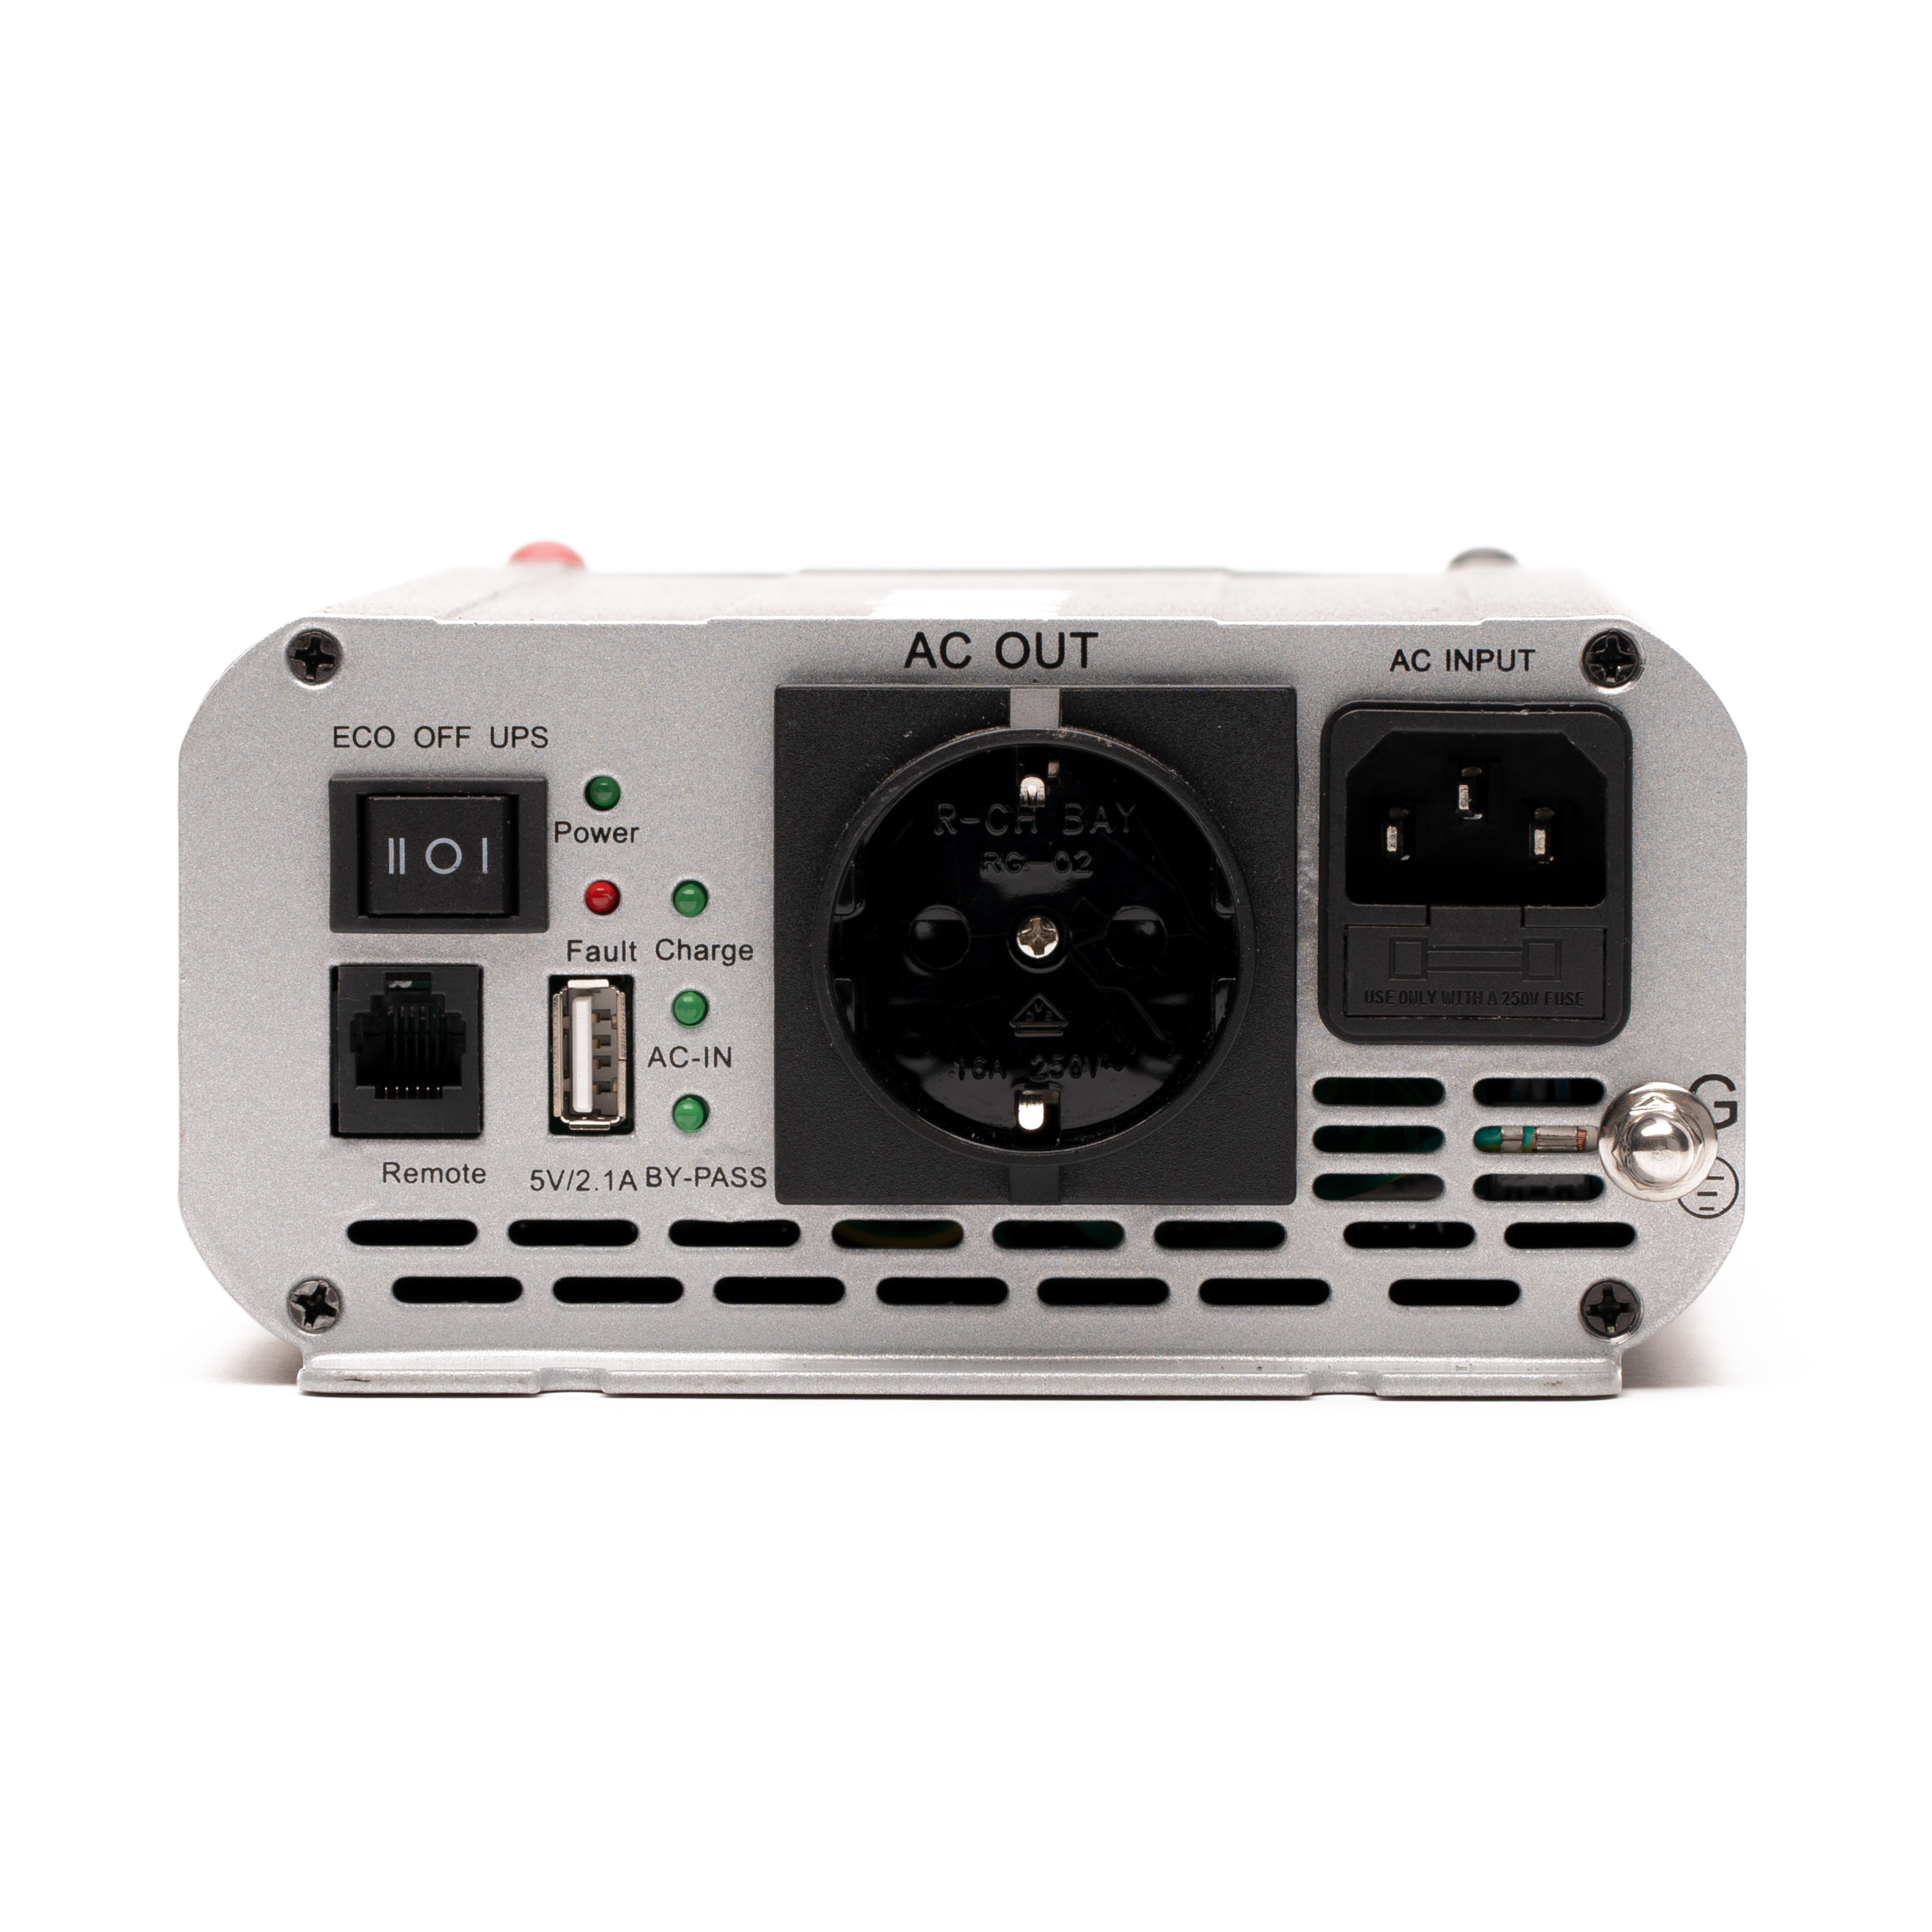 NOQON NSP312 300W/12V Sinus-Wechselrichter mit reiner Sinuswelle